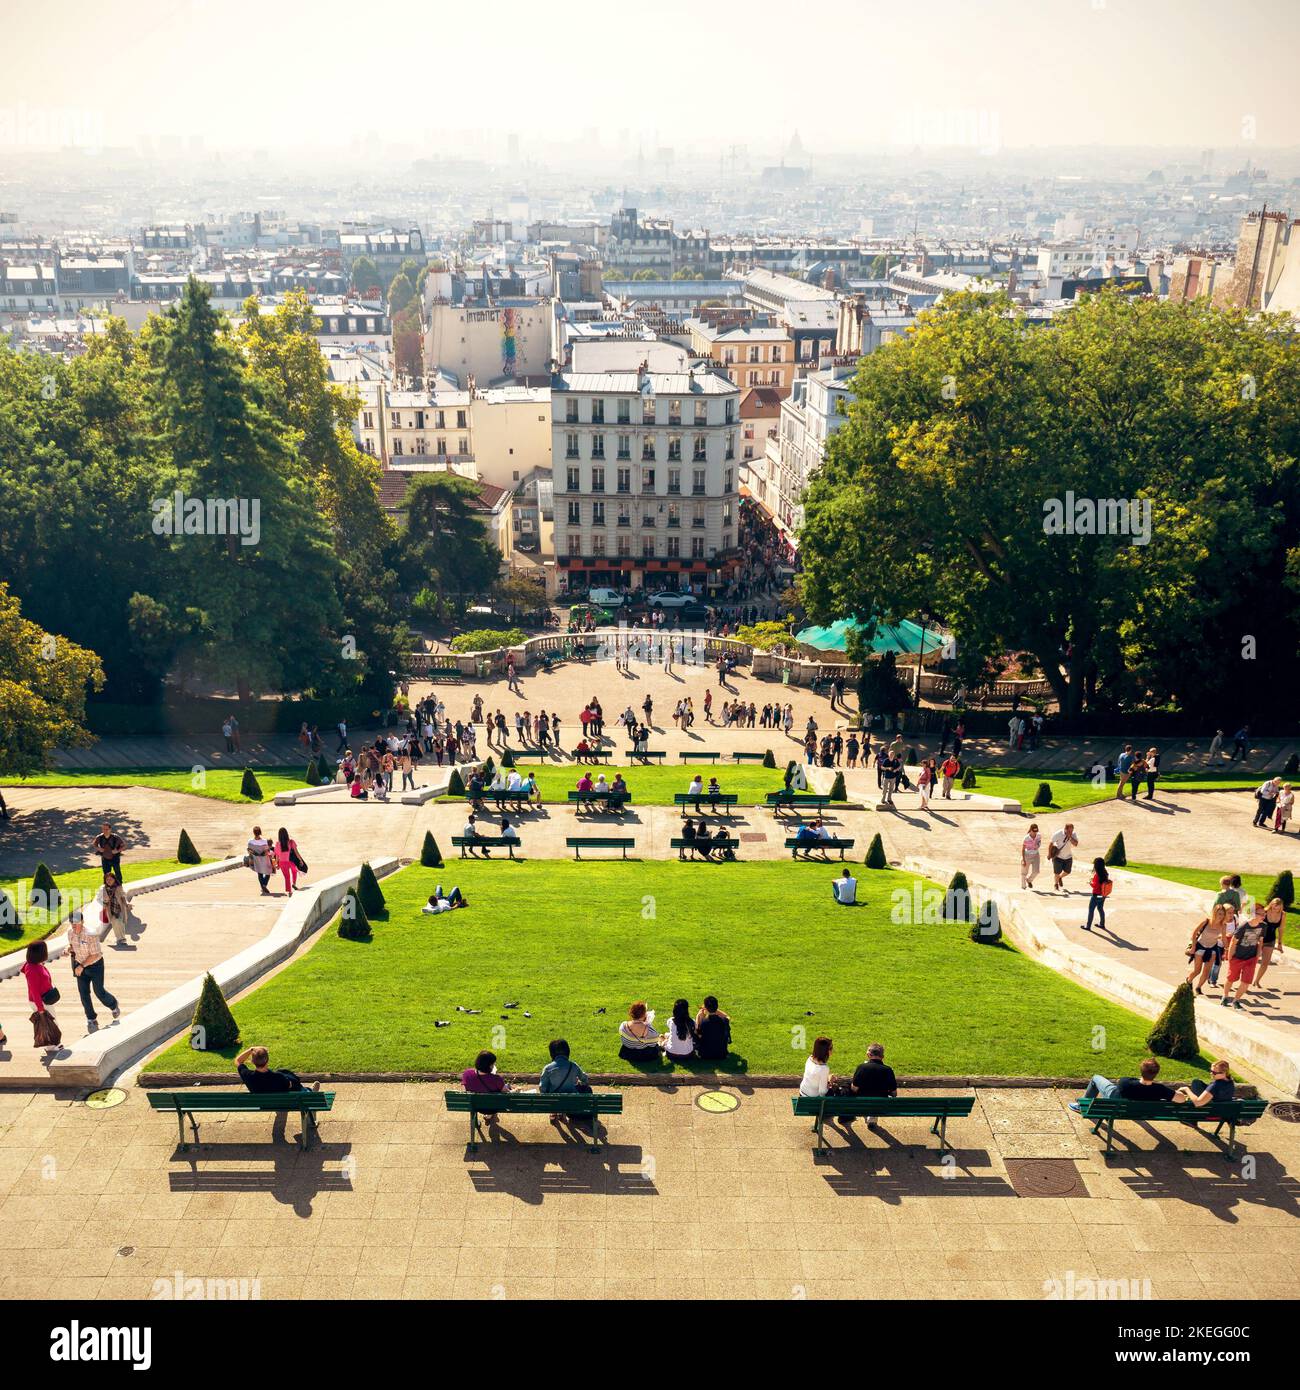 Paris - 24 septembre 2013 : vue sur Paris depuis la colline de Montmartre, France. Montmartre est un quartier historique, un monument de la ville. Les gens marchent et se reposent sur Montmartre i Banque D'Images